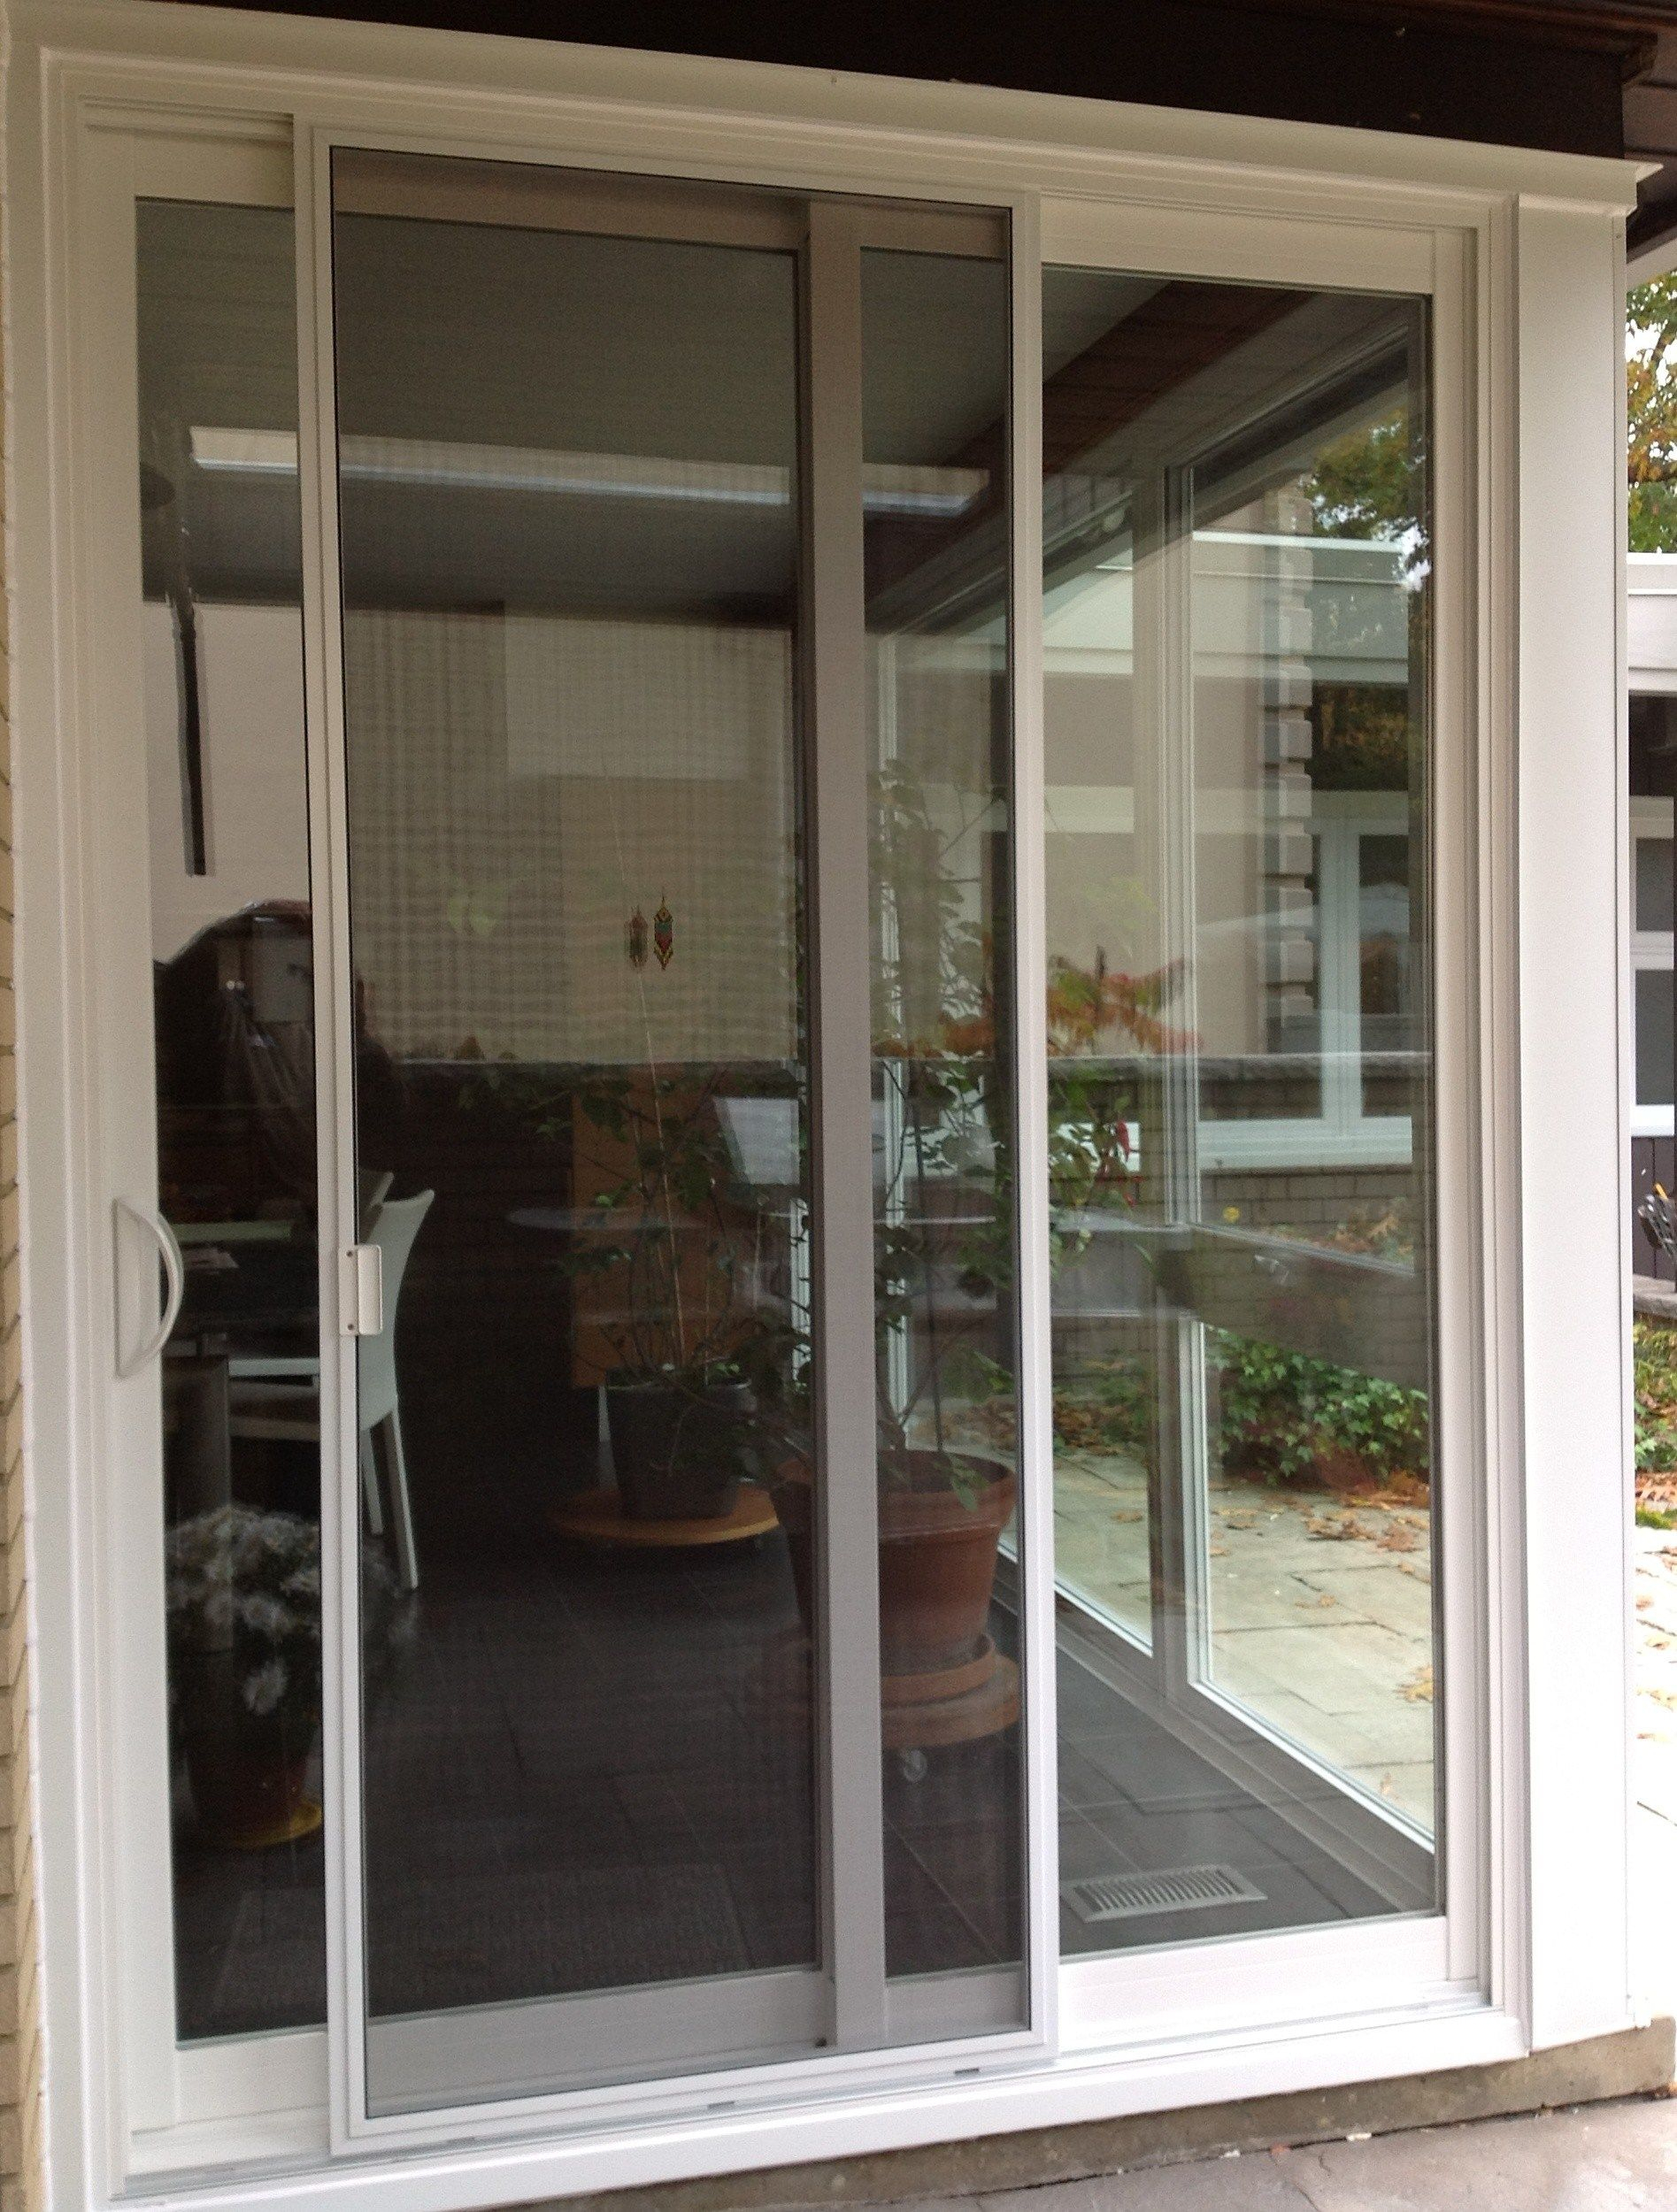 Best Of Door Handles For Sliding Glass Doors Home Decor regarding proportions 1895 X 2500